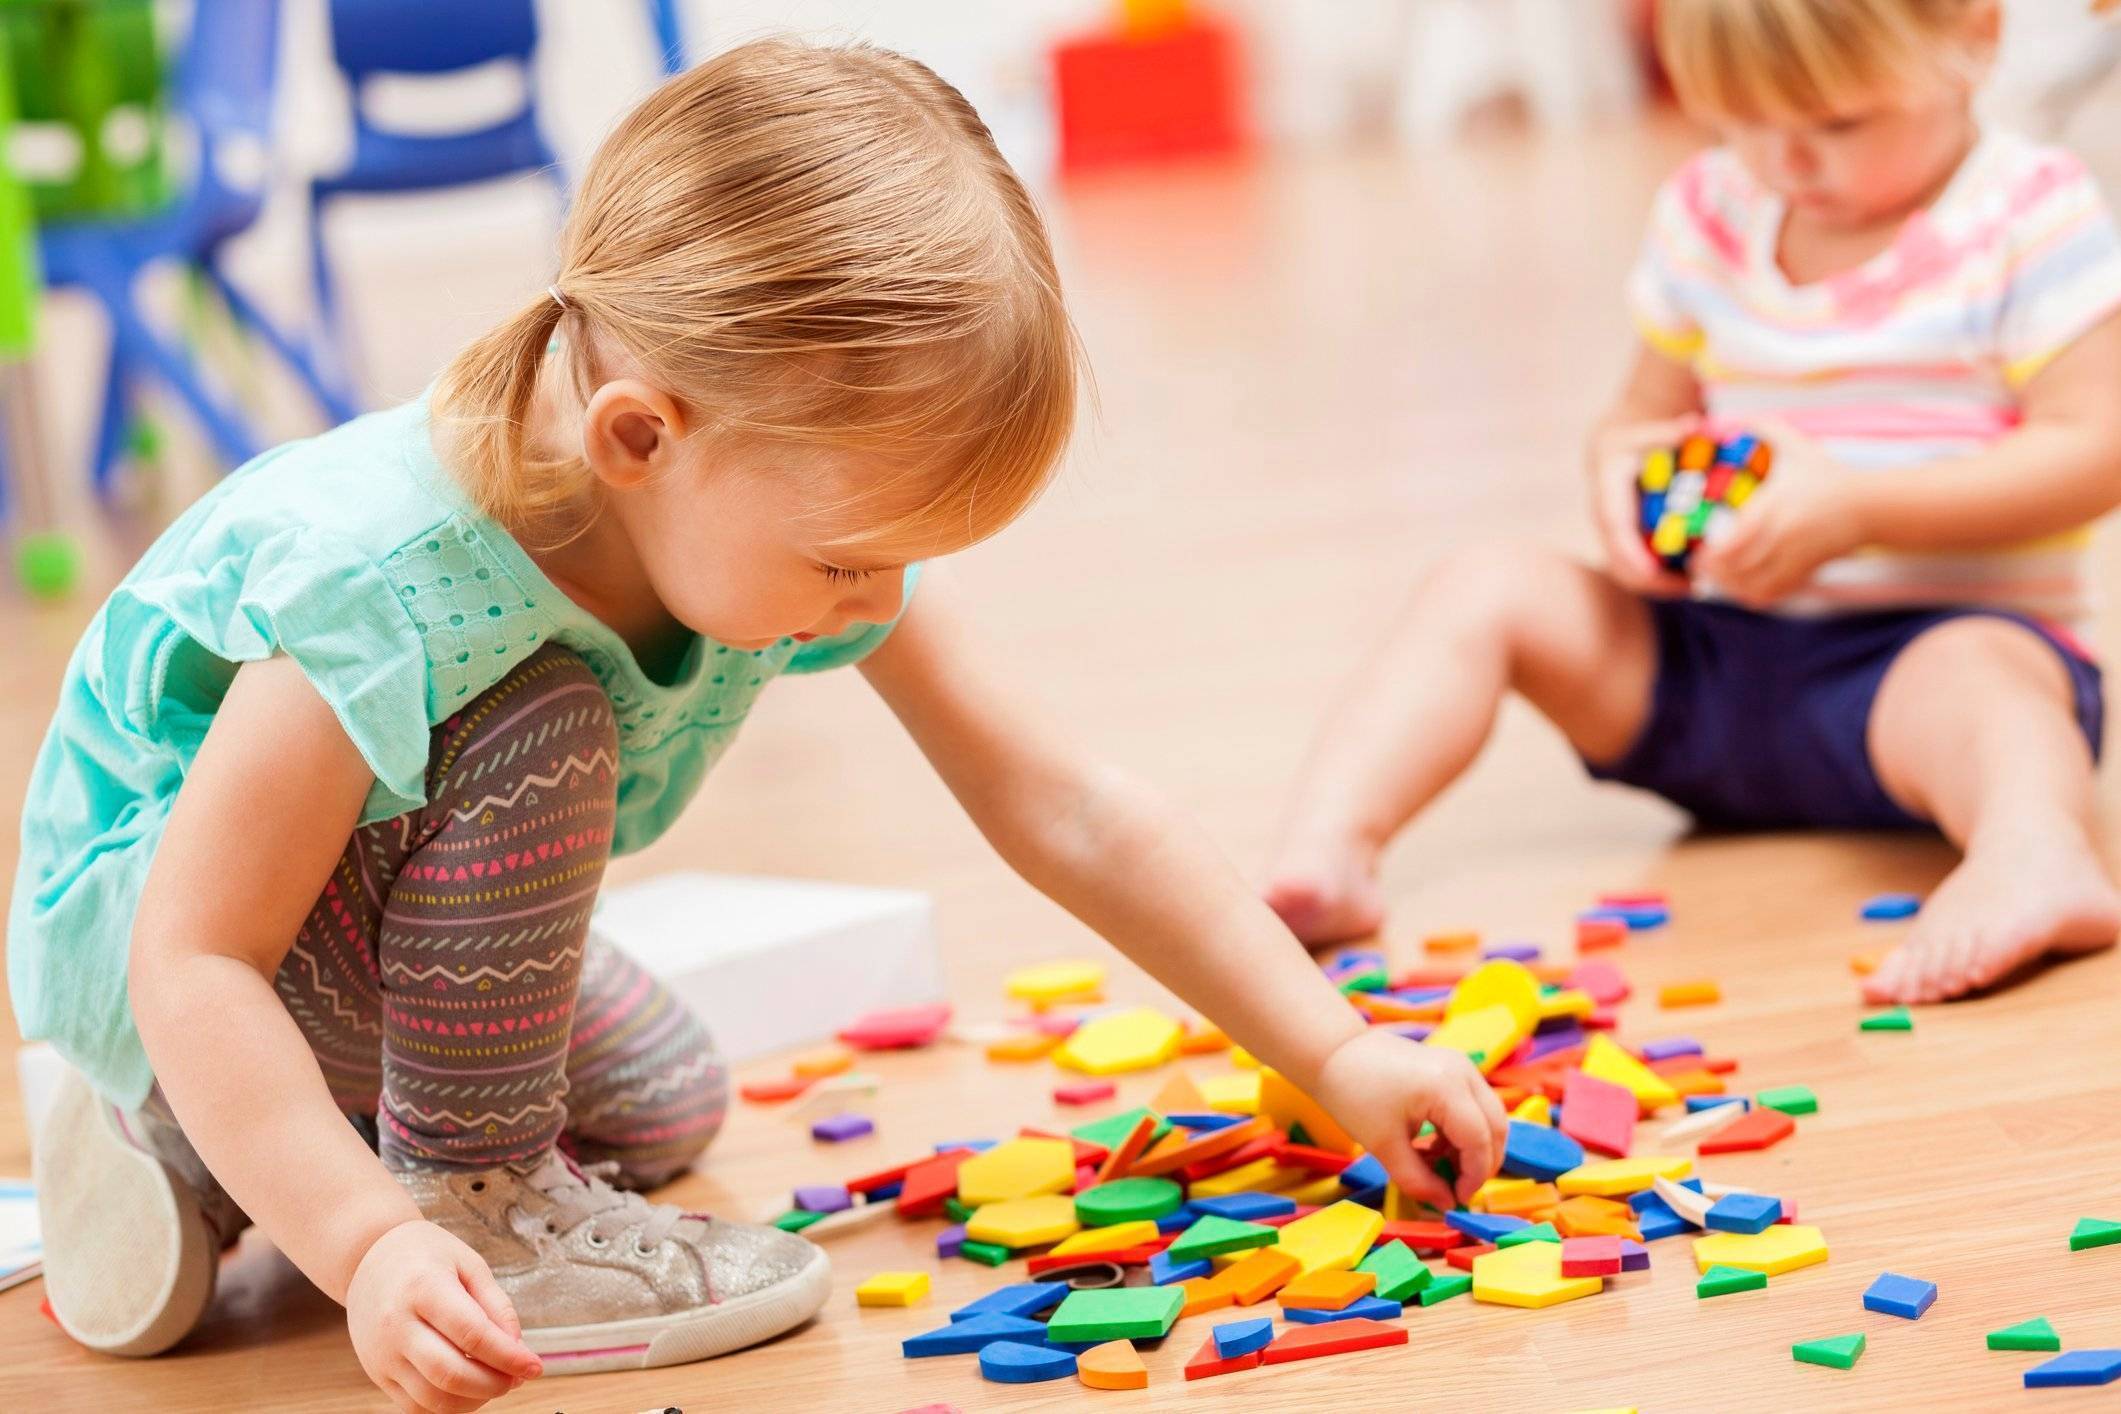 Как развивать ребенка в 9 месяцев: игры, занятия, игрушки, ладушки